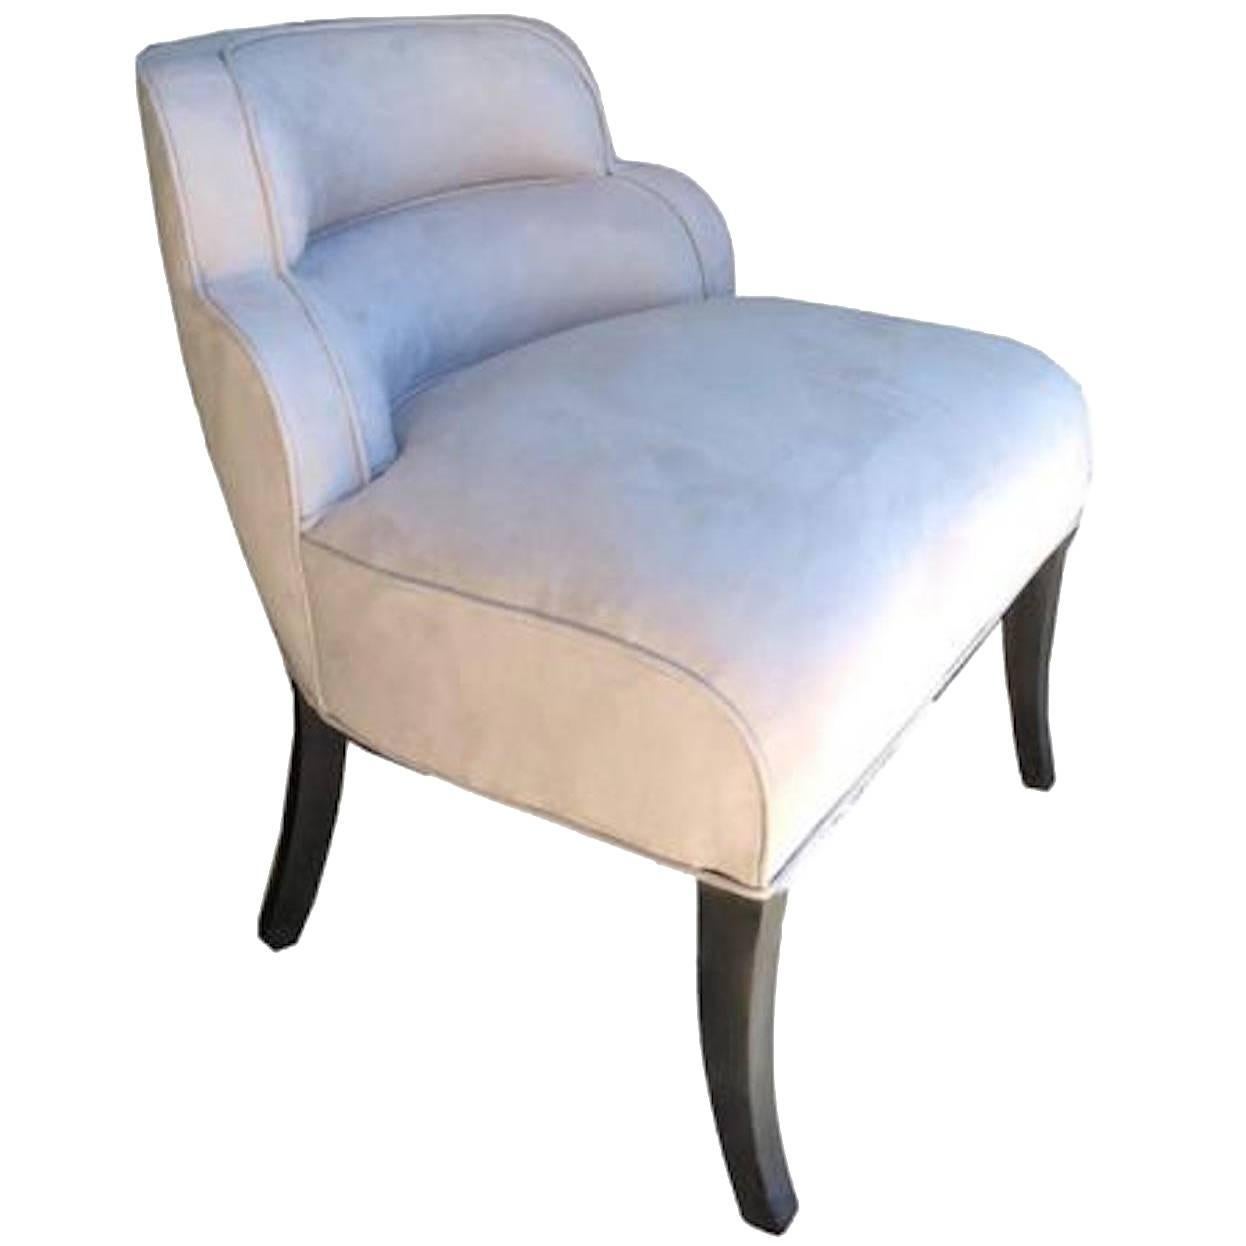 Unique American Art Deco Side or Boudoir Chair For Sale